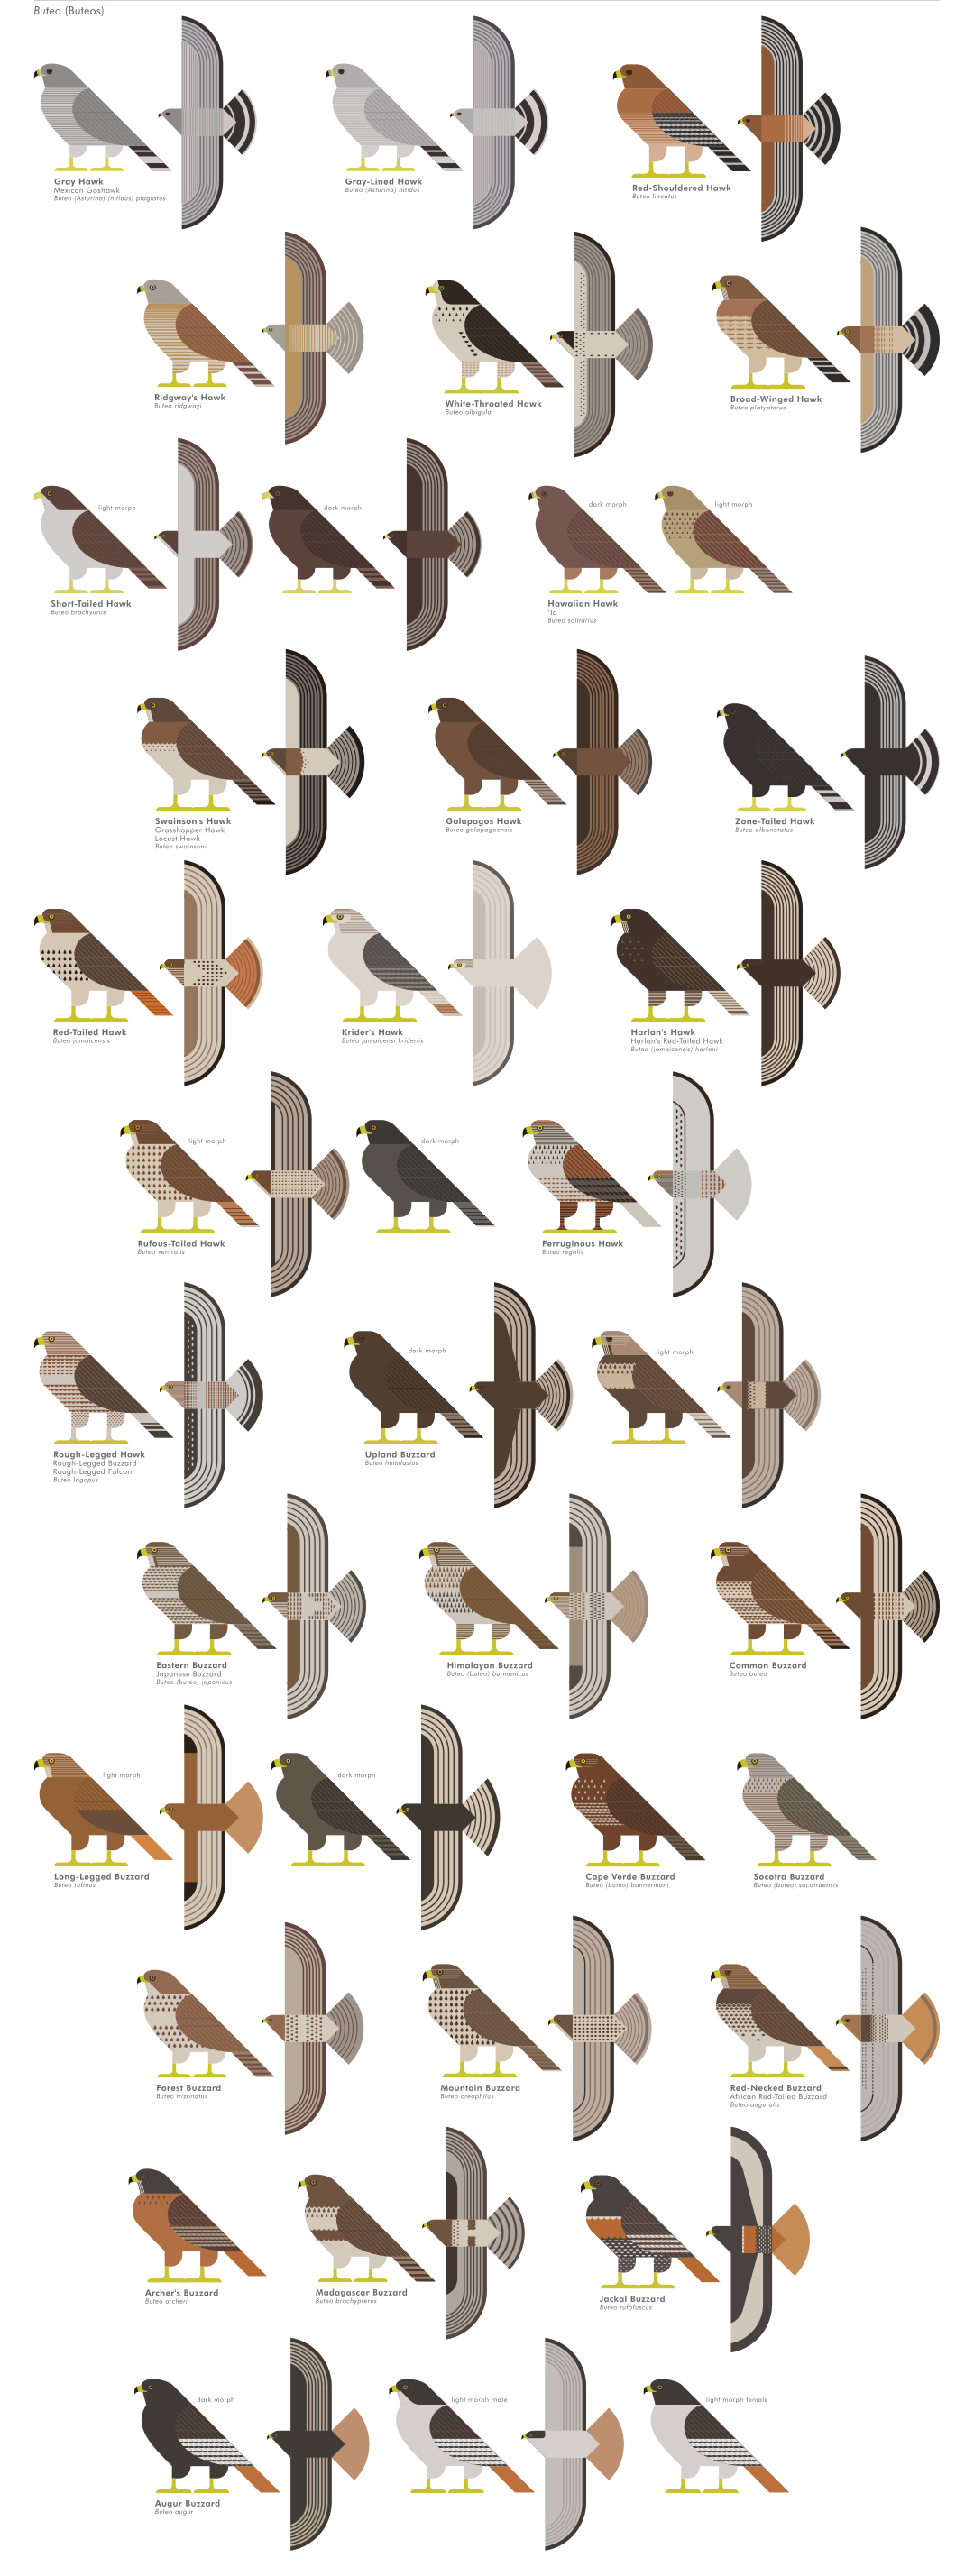 scott partridge - ave - avian vector encyclopedia - accipitriformes buteos - bird vector art